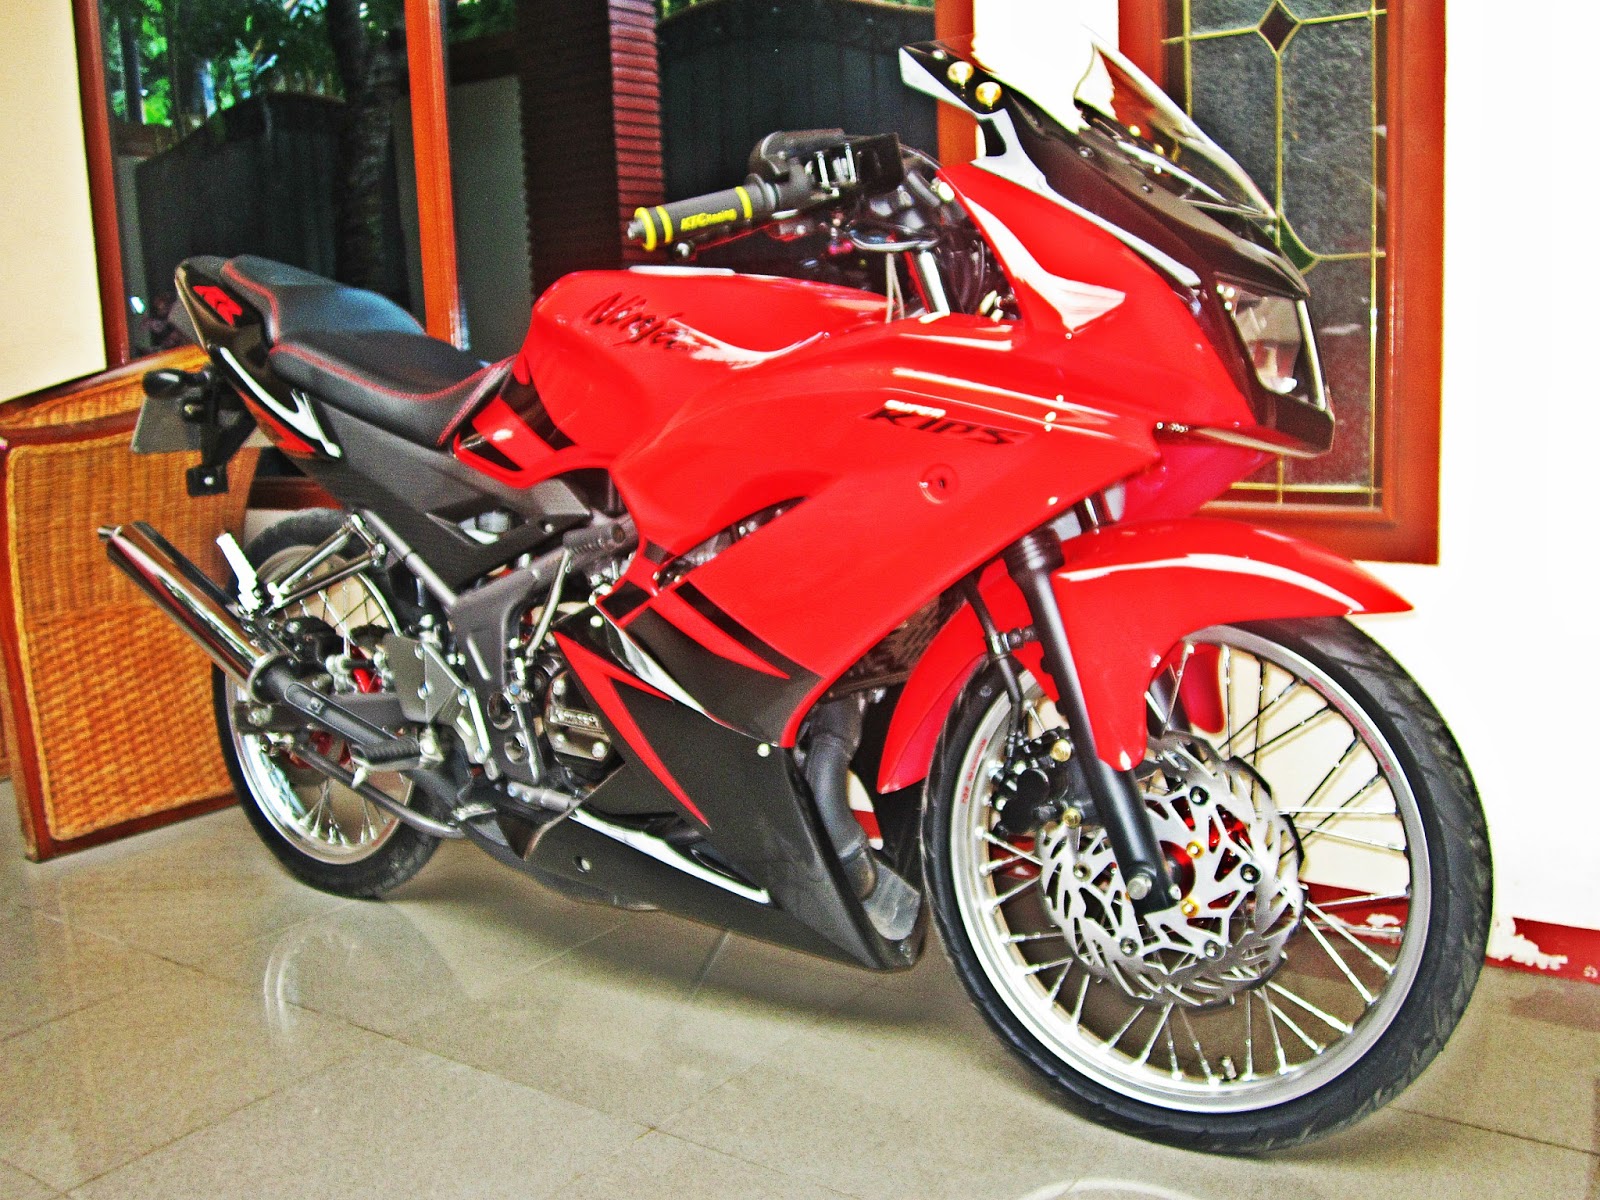  Modifikasi  Motor Kawasaki Ninja  R RR  Warna Hijau  Velg Biru